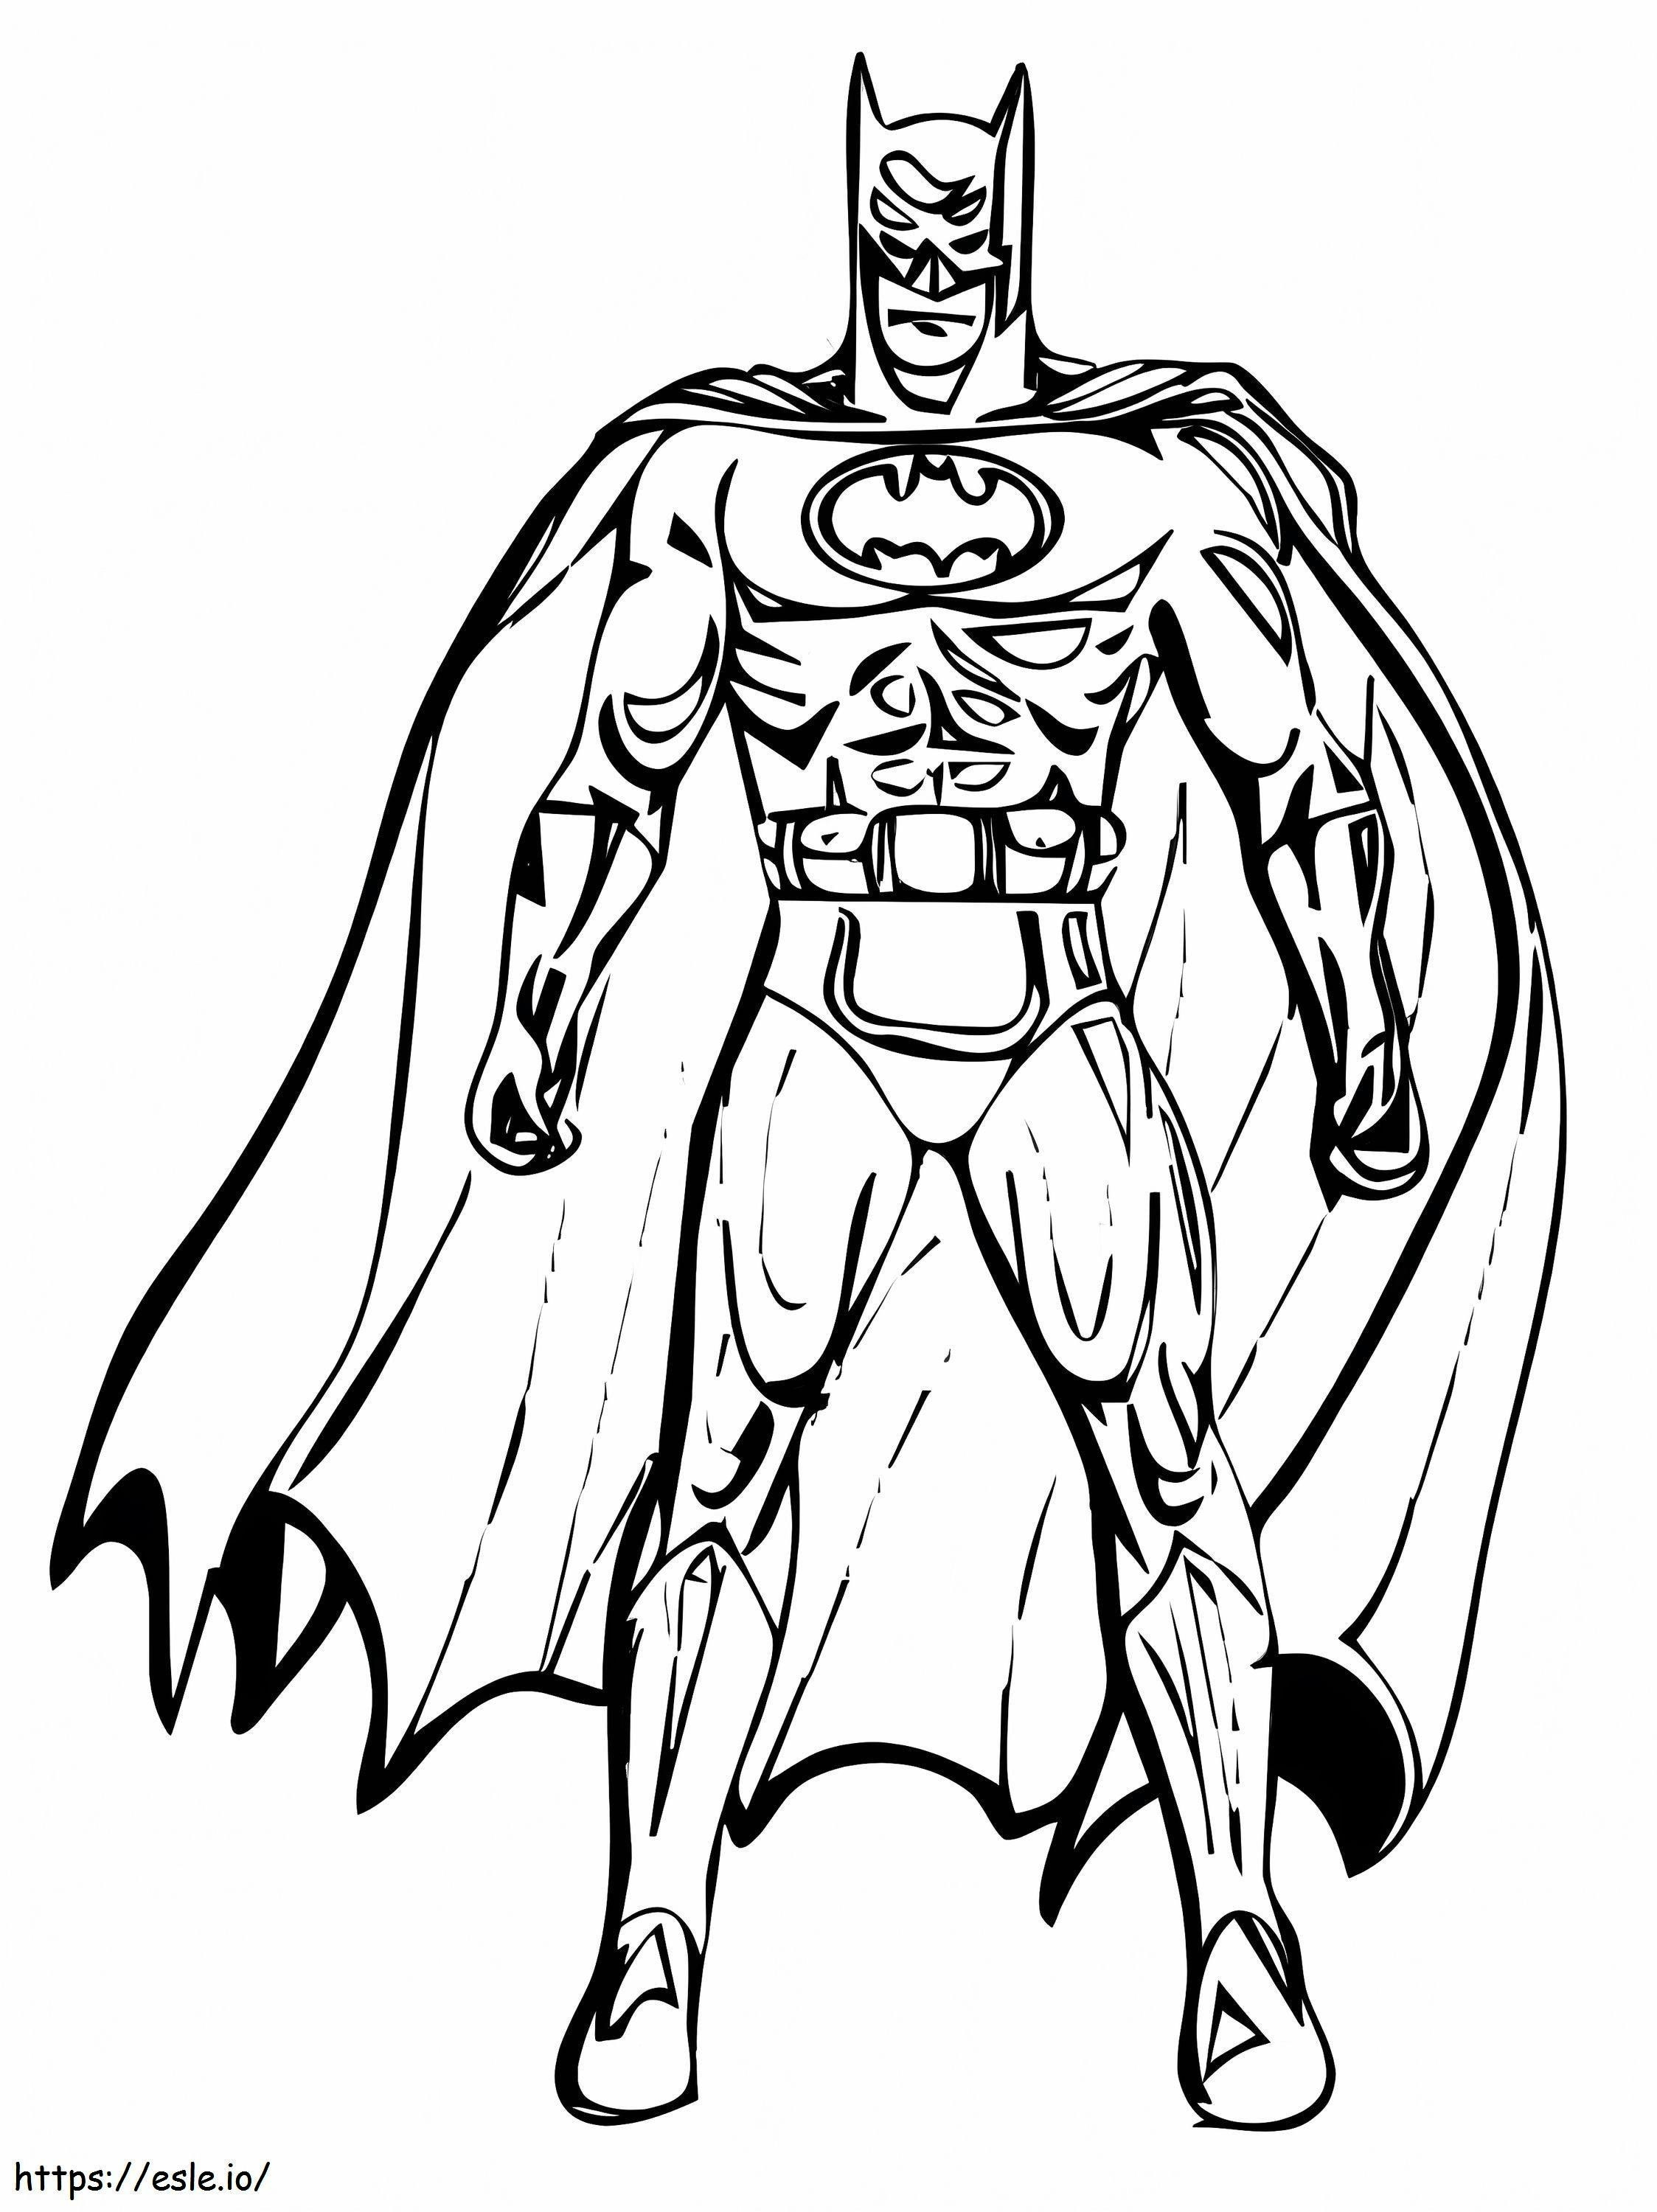 Batman-Zeichnung ausmalbilder